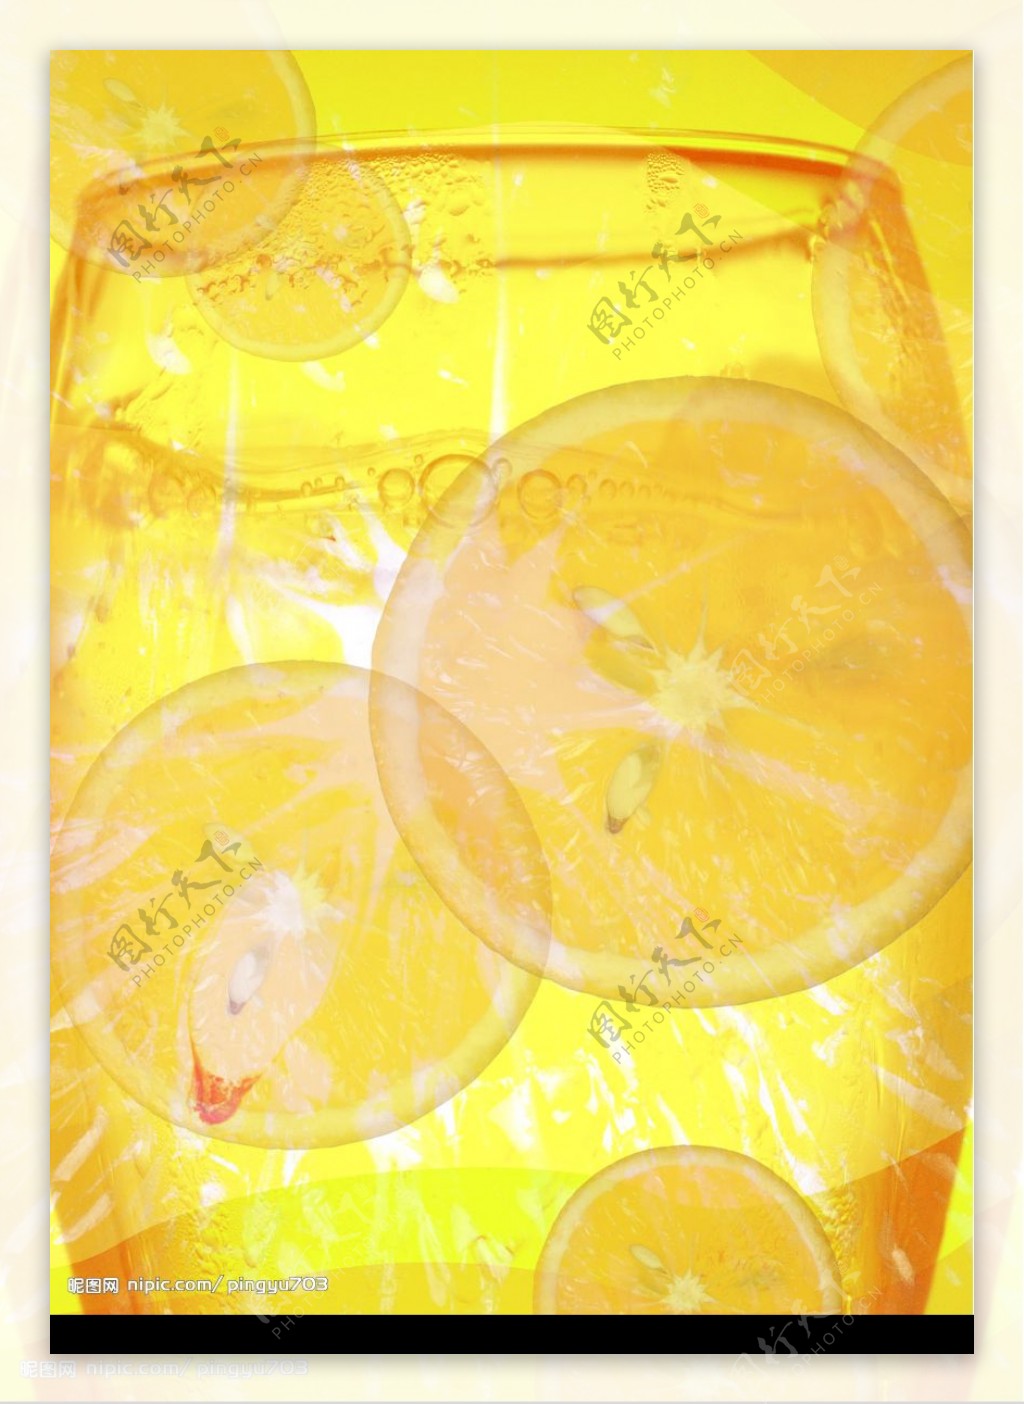 橘子饮料图片